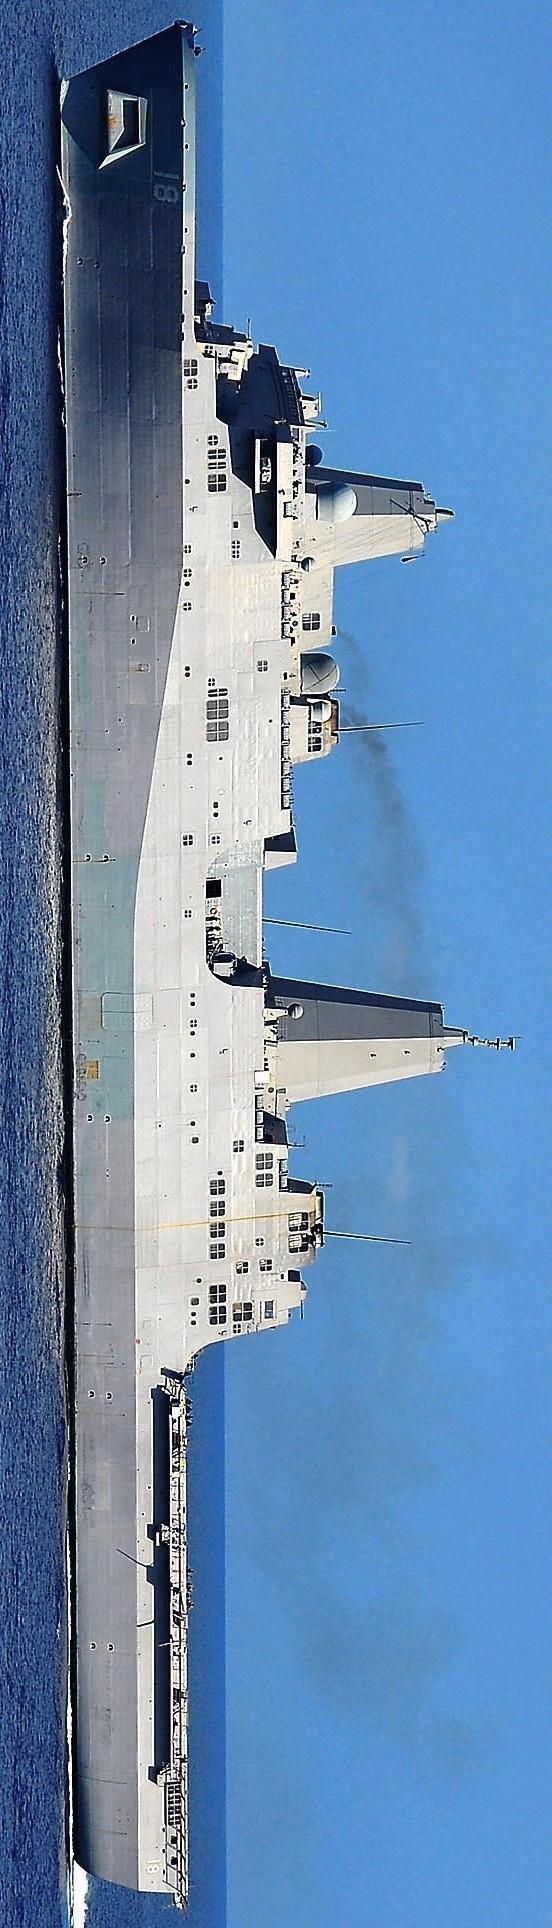 新奥尔良号(完胜核潜艇的超豪华渡轮 新奥尔良号船坞运输舰 百图图鉴)